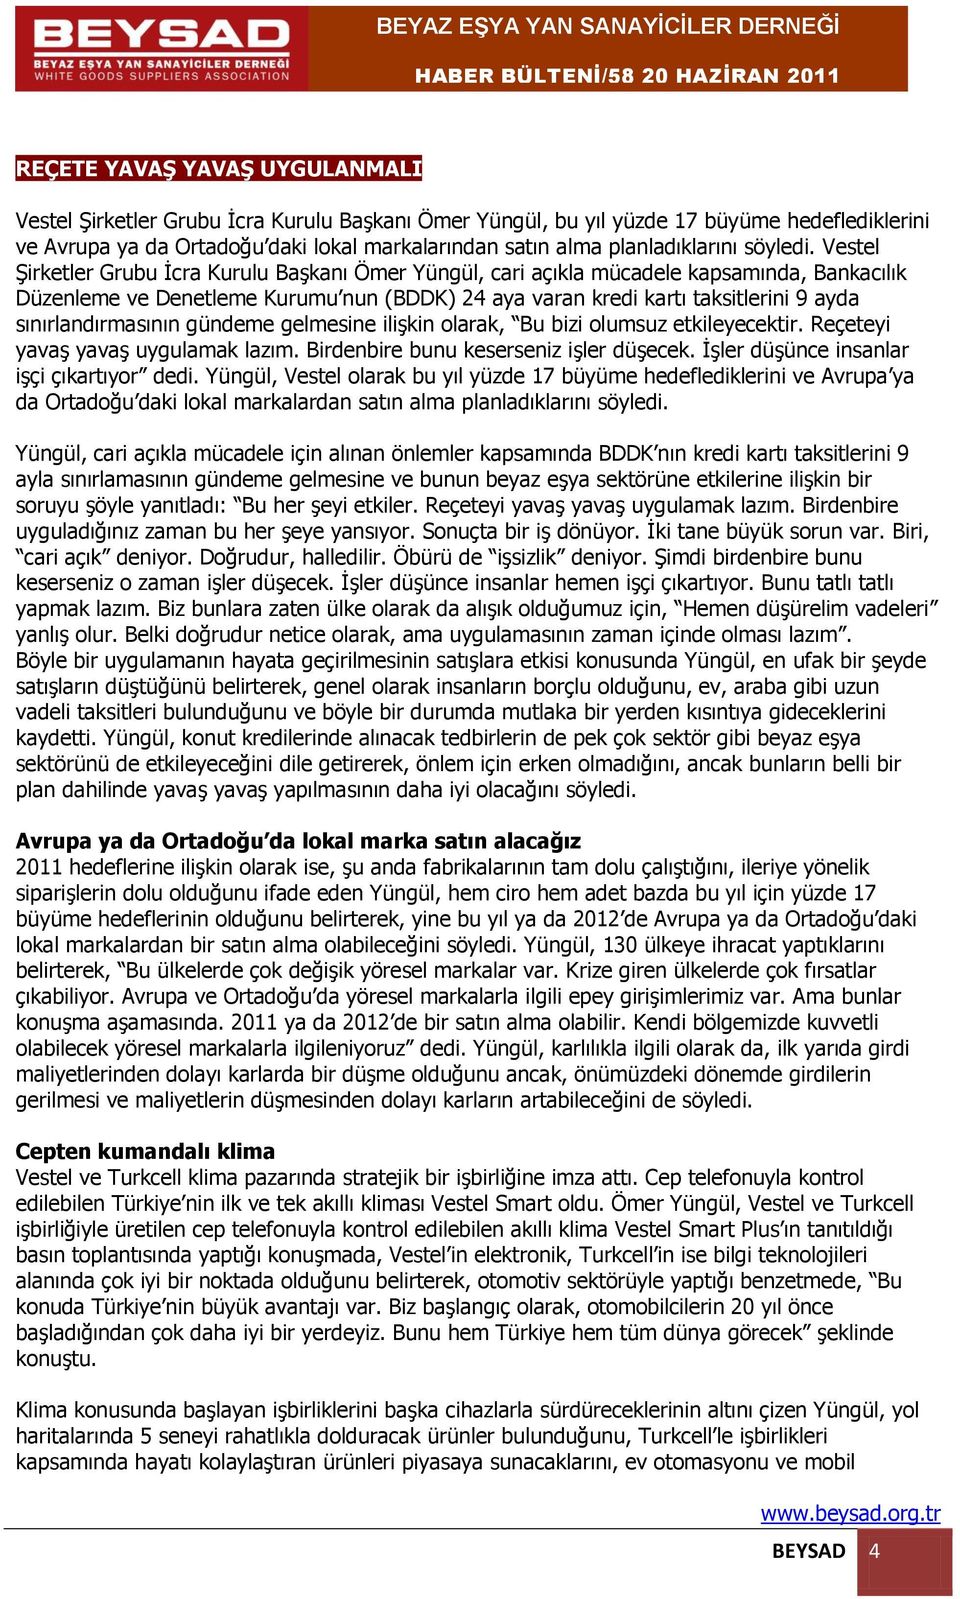 Vestel Şirketler Grubu İcra Kurulu Başkanı Ömer Yüngül, cari açıkla mücadele kapsamında, Bankacılık Düzenleme ve Denetleme Kurumu nun (BDDK) 24 aya varan kredi kartı taksitlerini 9 ayda